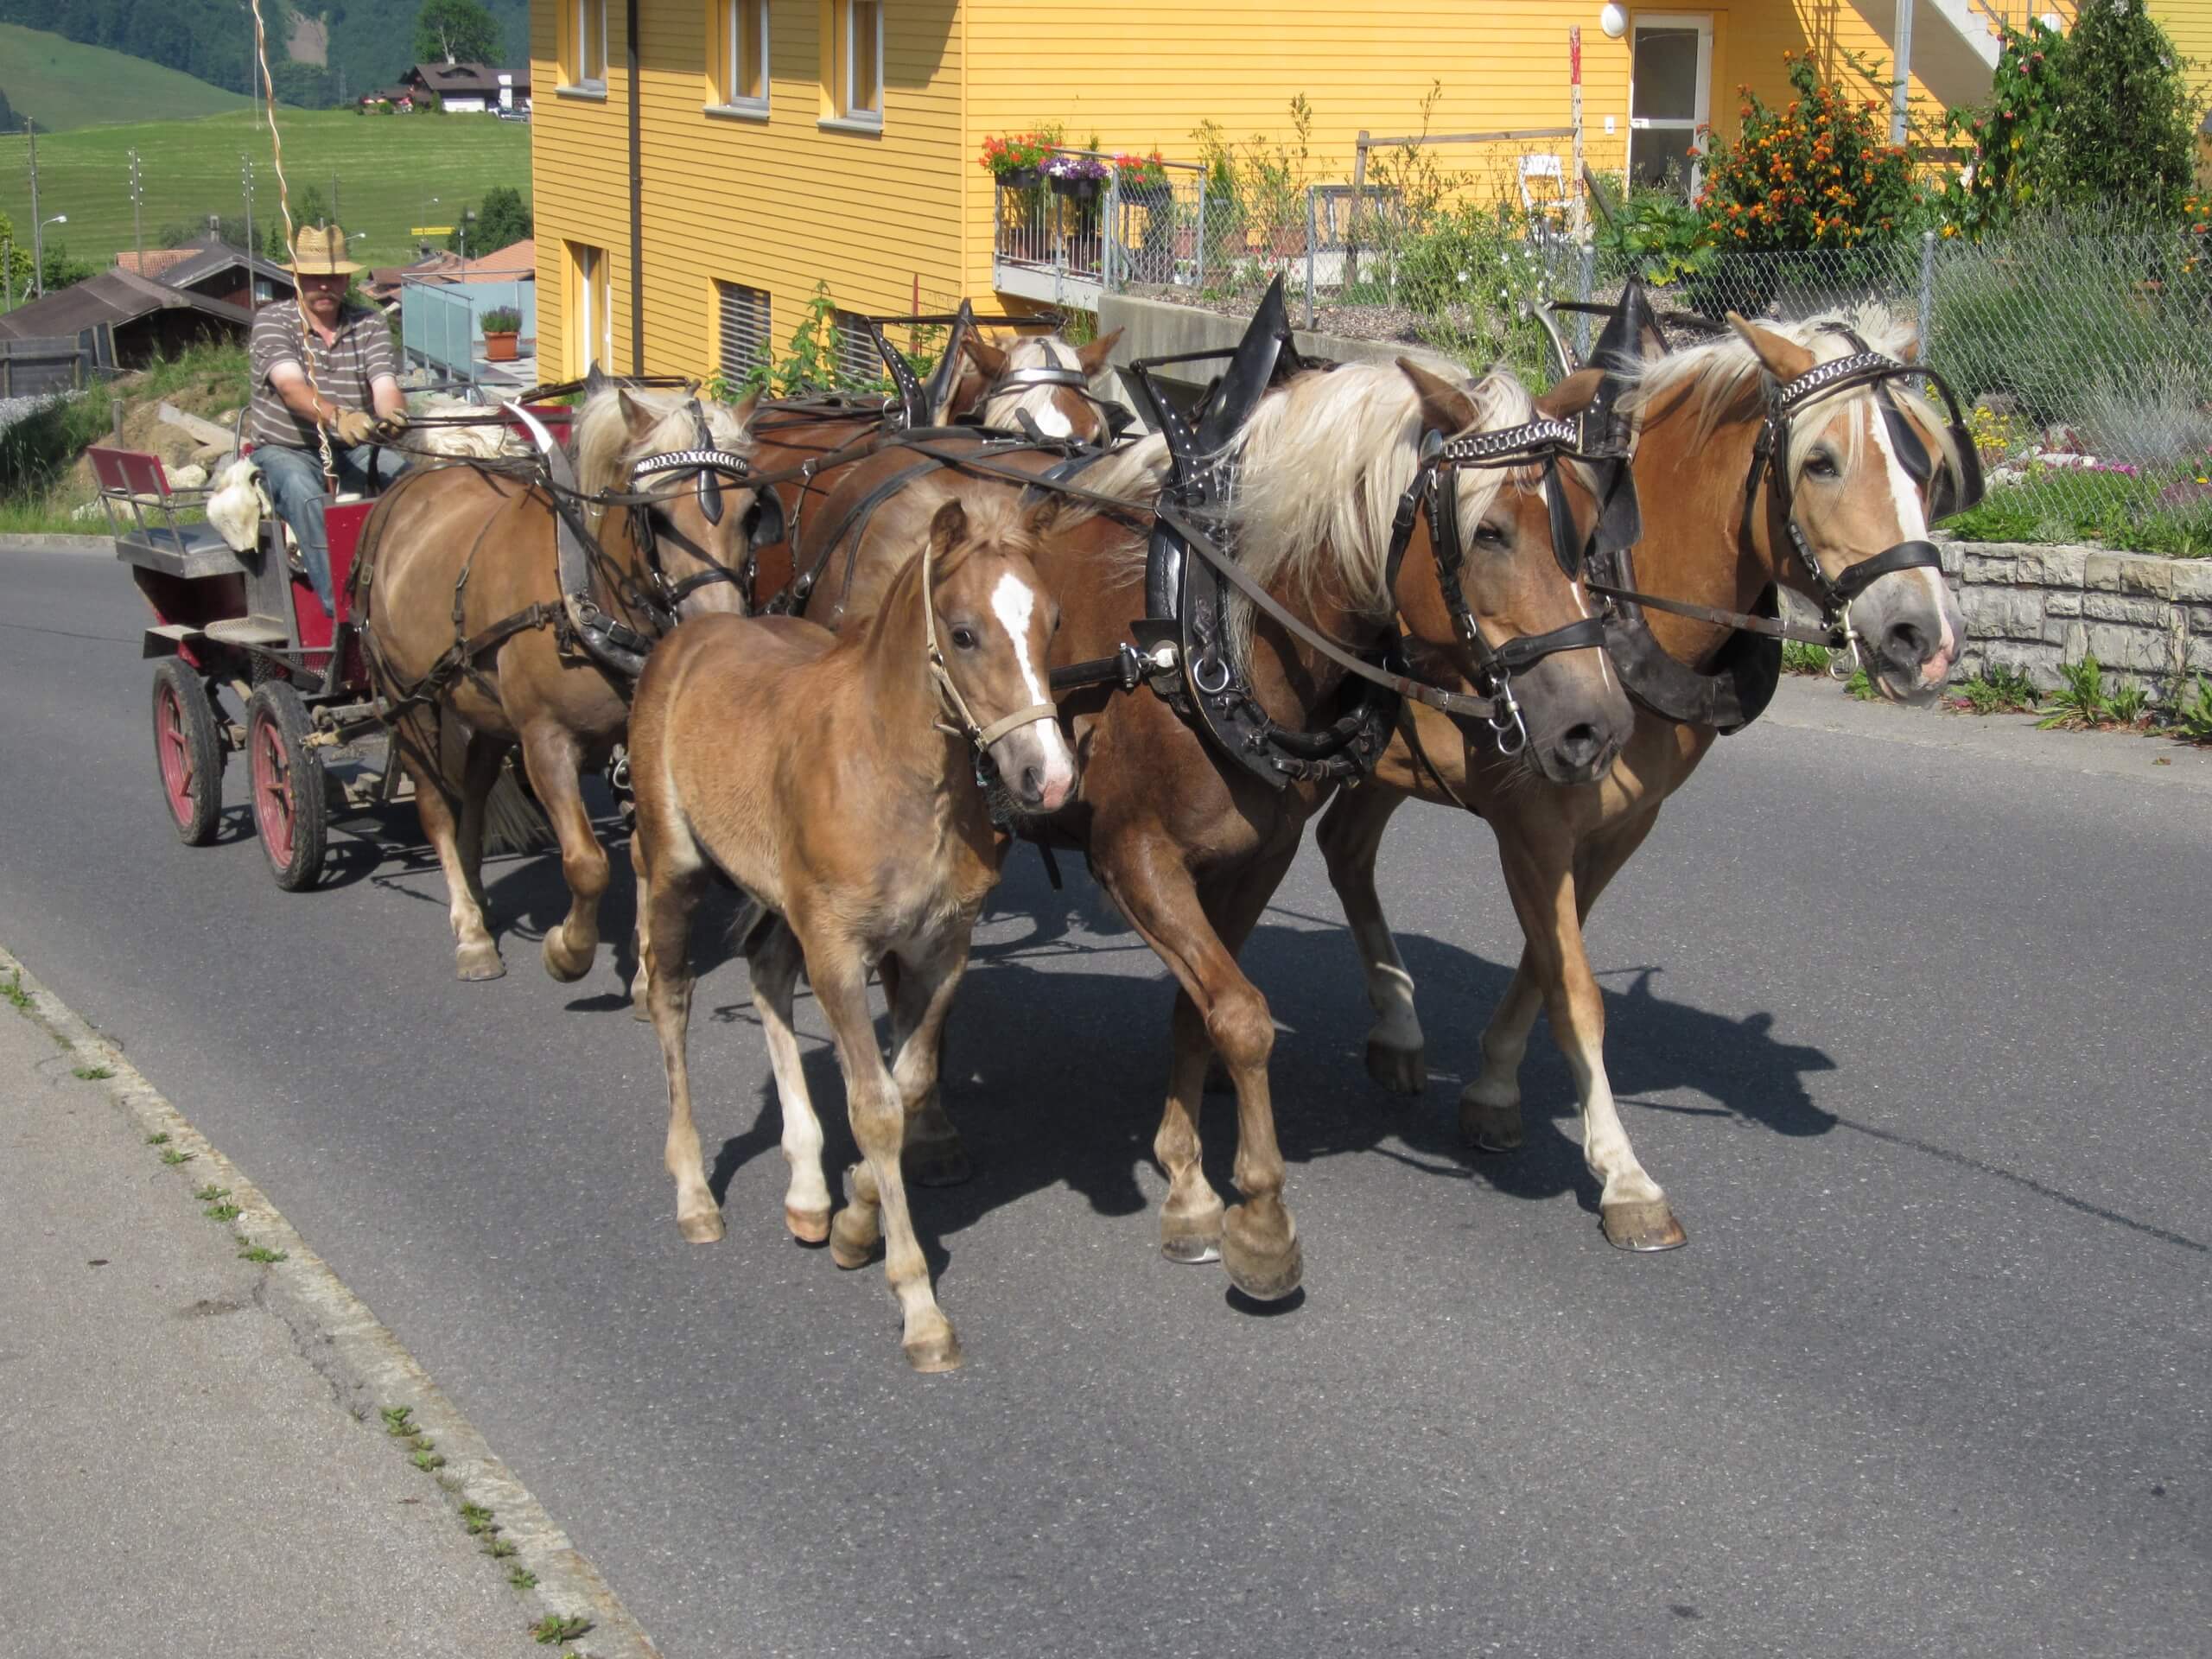 aeschi-kutschenfahrt-pferde-sommer-dorfrundfahrt